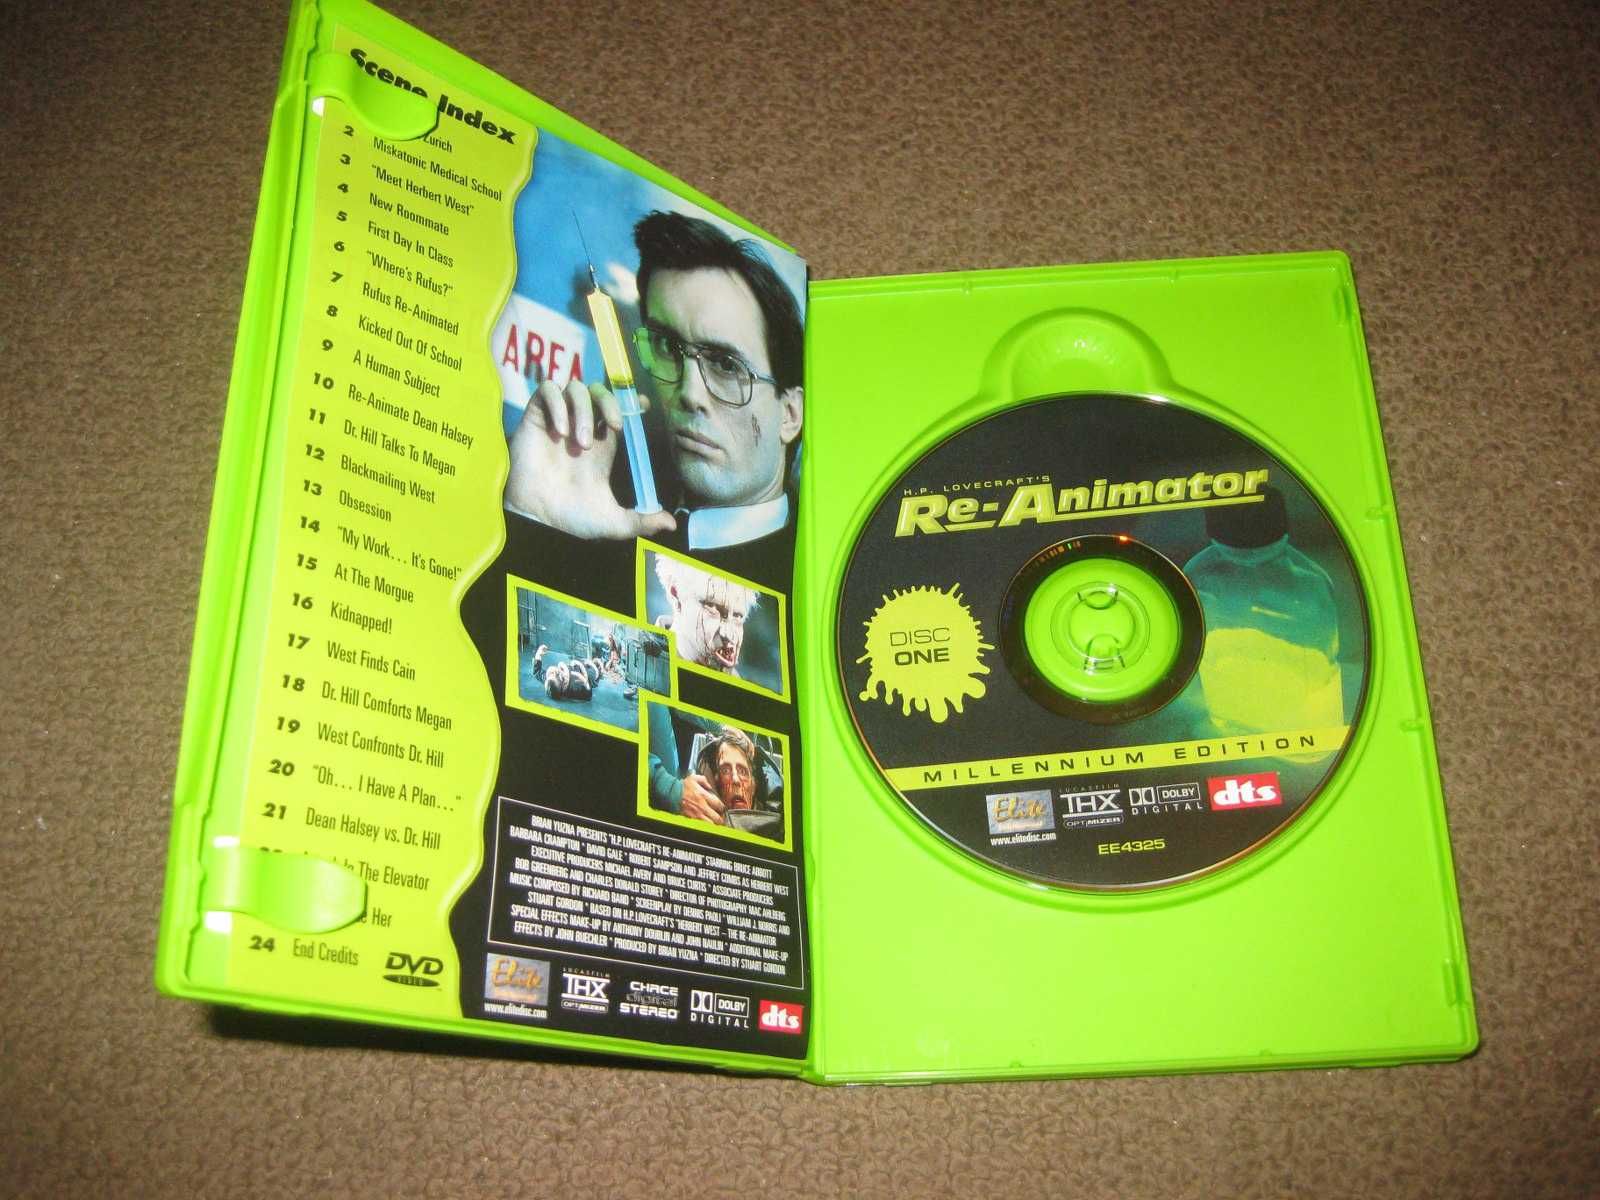 "Re-Animator- Soro Maléfico" de Stuart Gordon/Edição Especial 2 DVDs